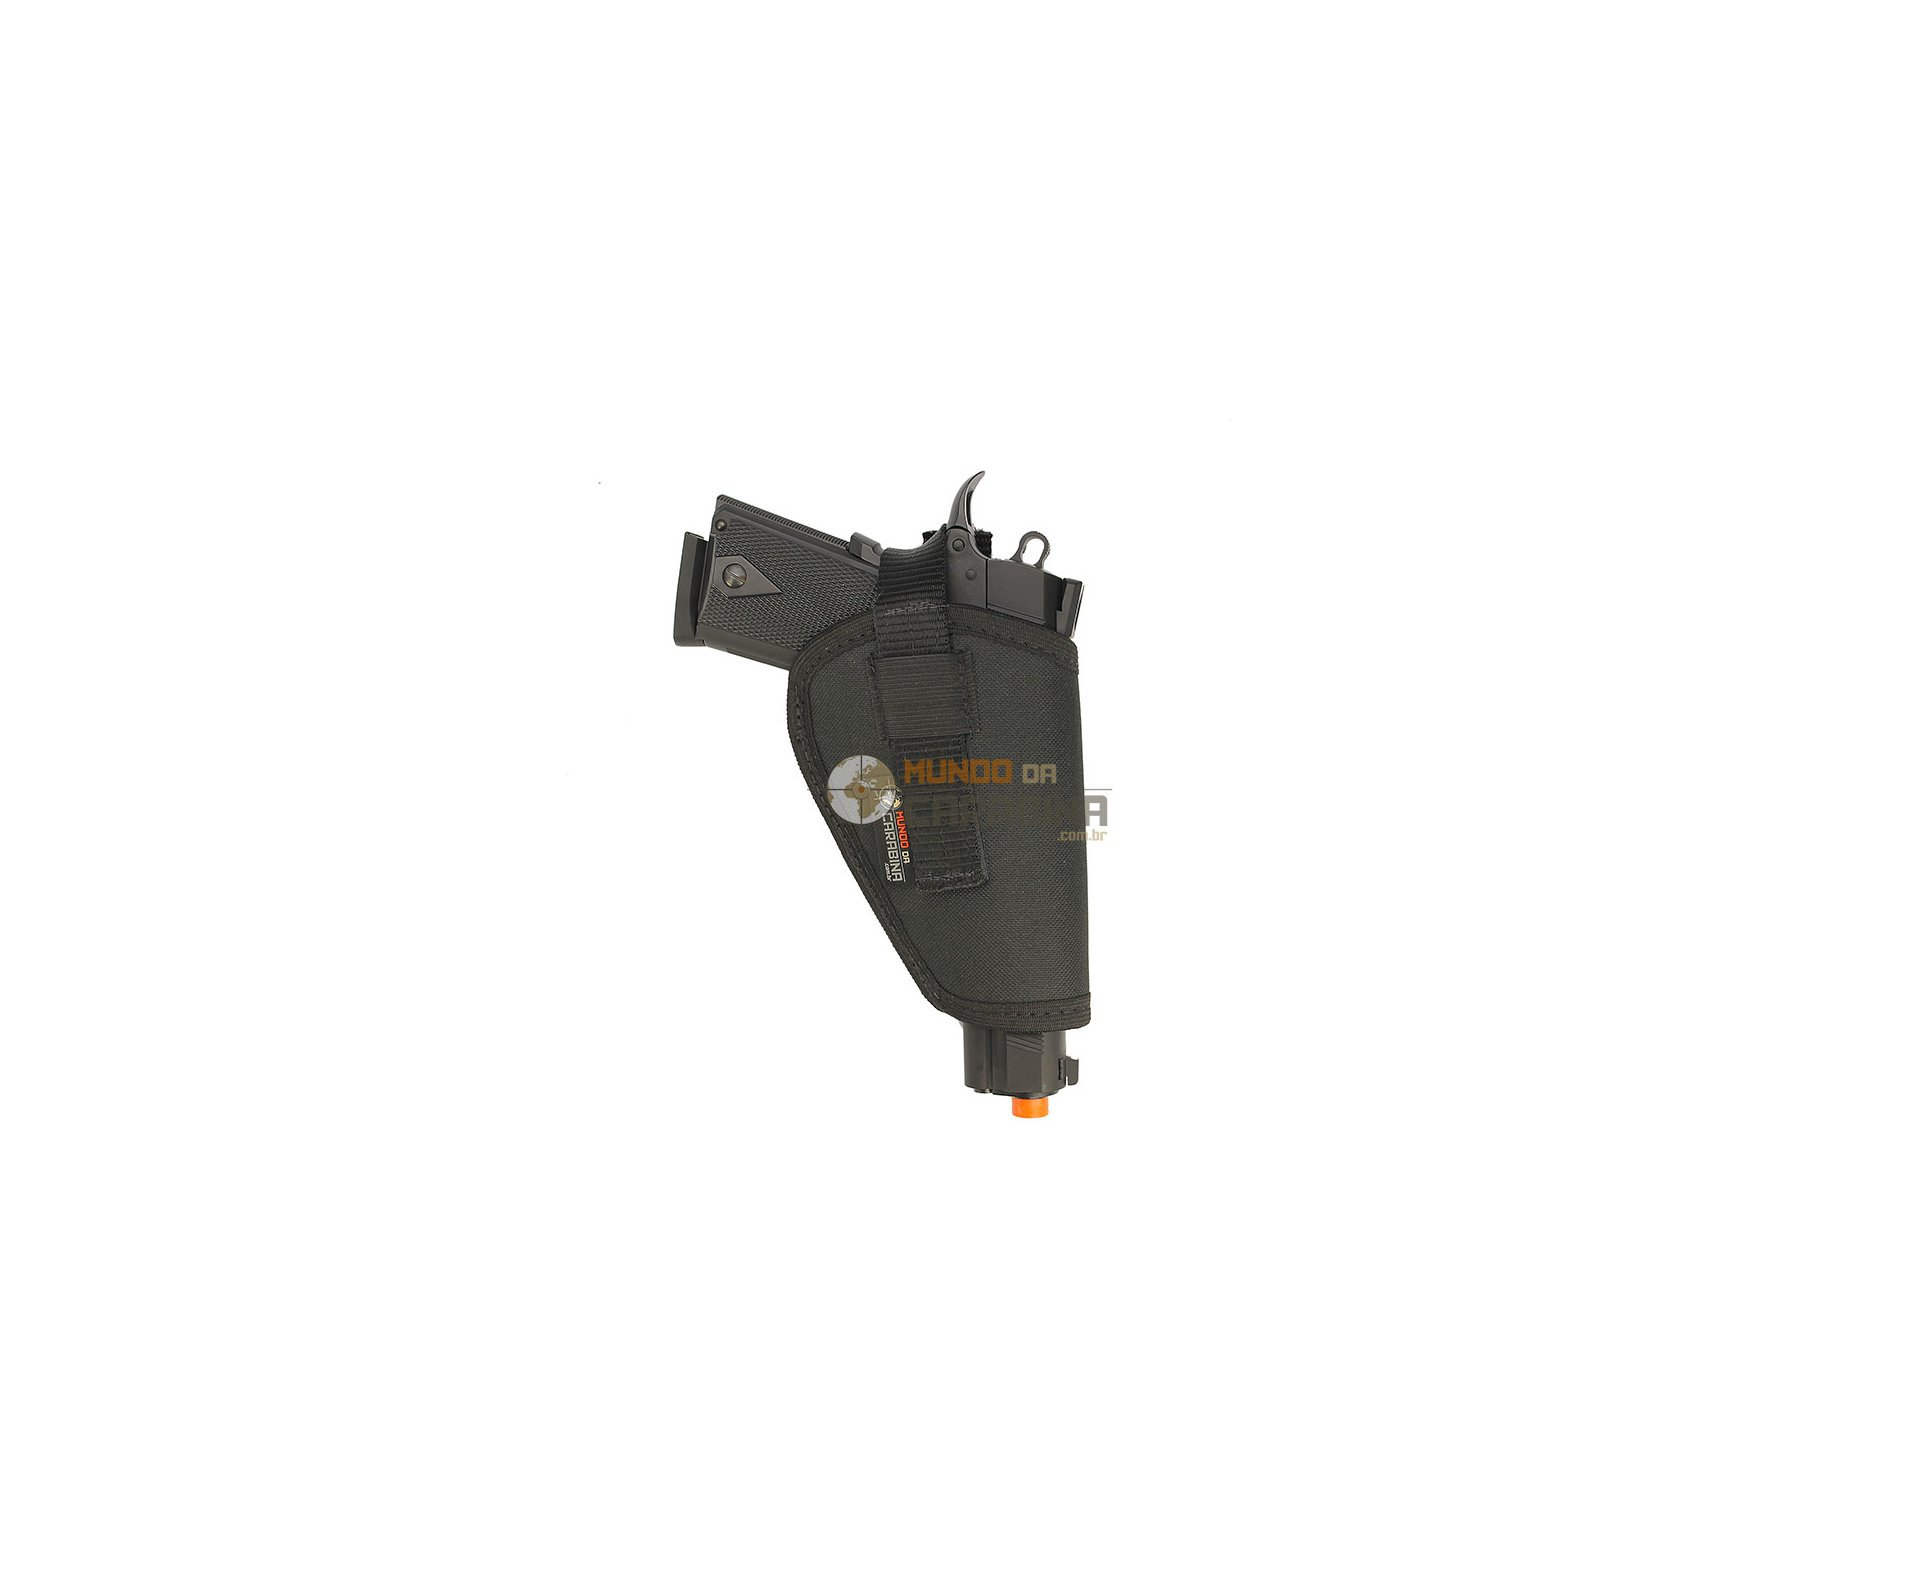 Pistola De Airsoft Eletrica M92f S&w Bivolt + Esferas 0,20g + Case Deluxe + Coldre - Cyma